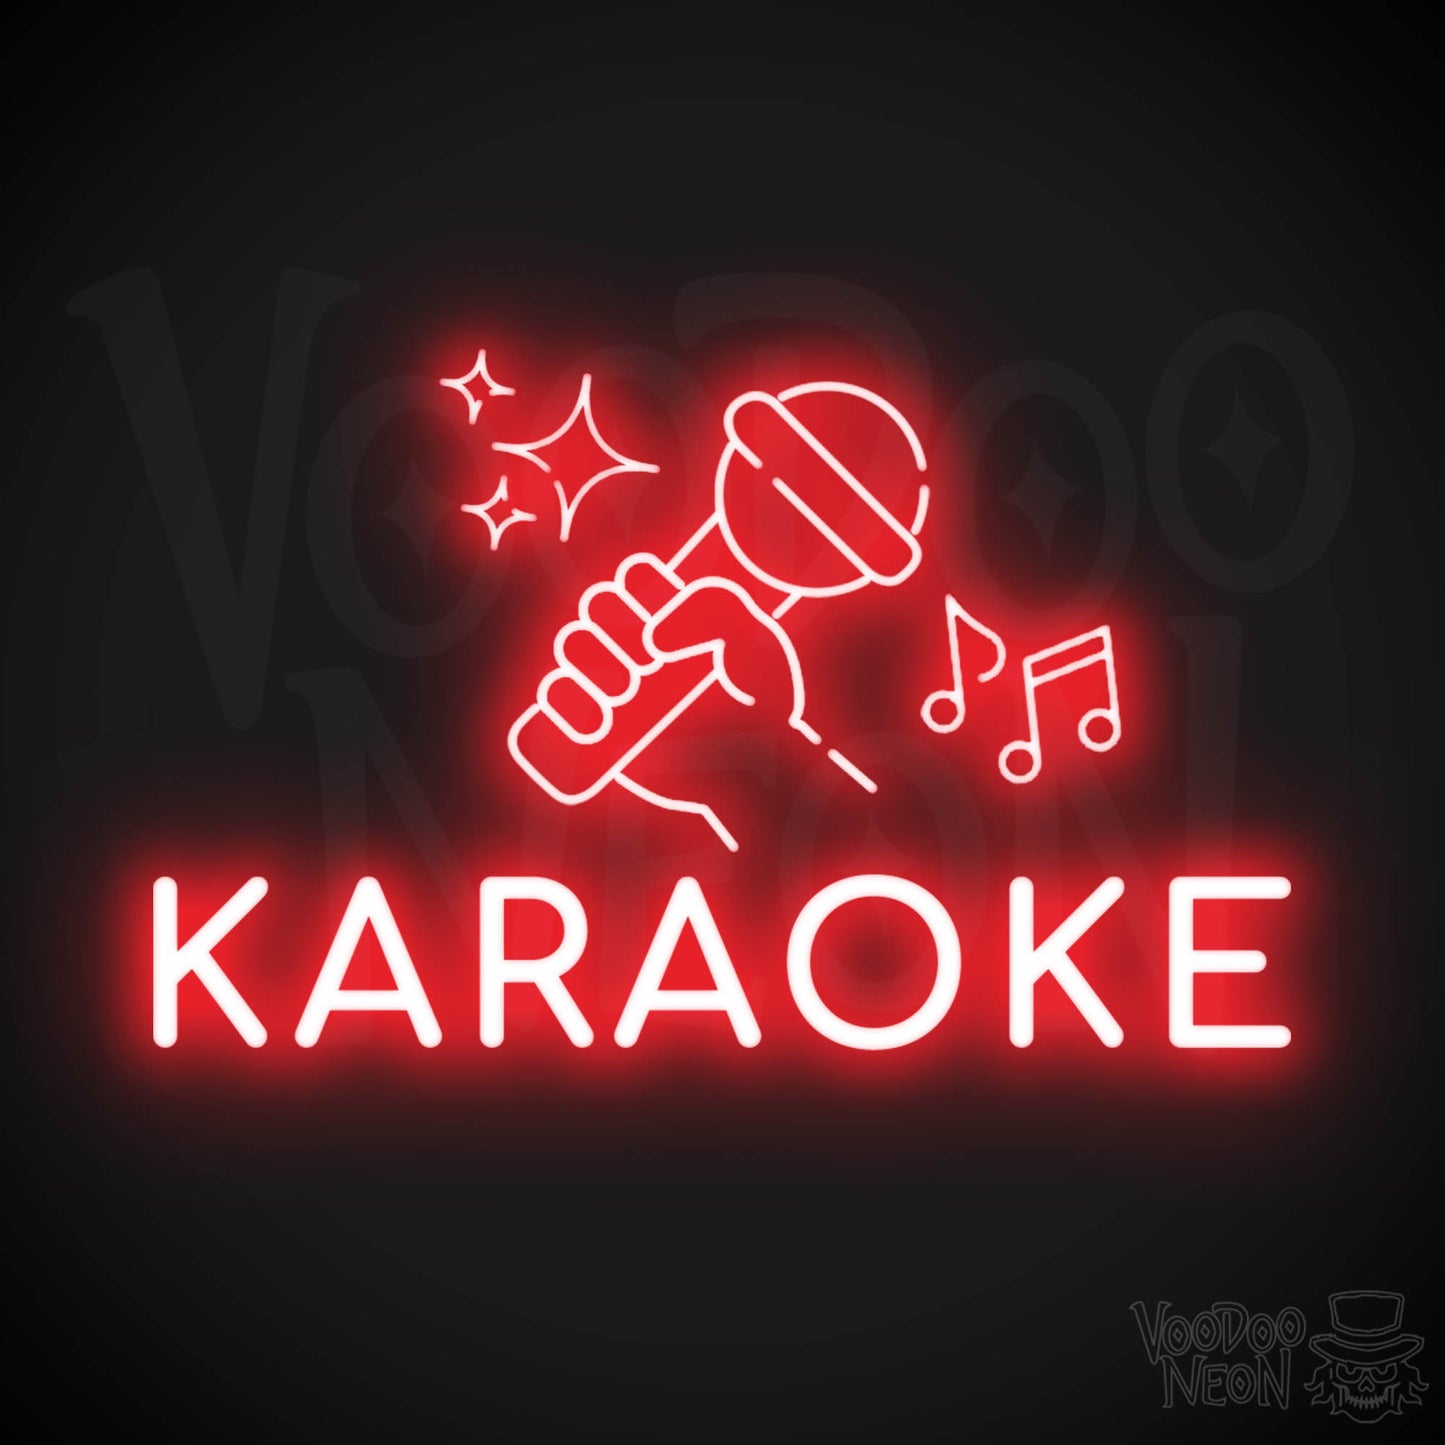 Karaoke Neon Sign - Neon Karaoke Sign - LED Wall Art - Color Red